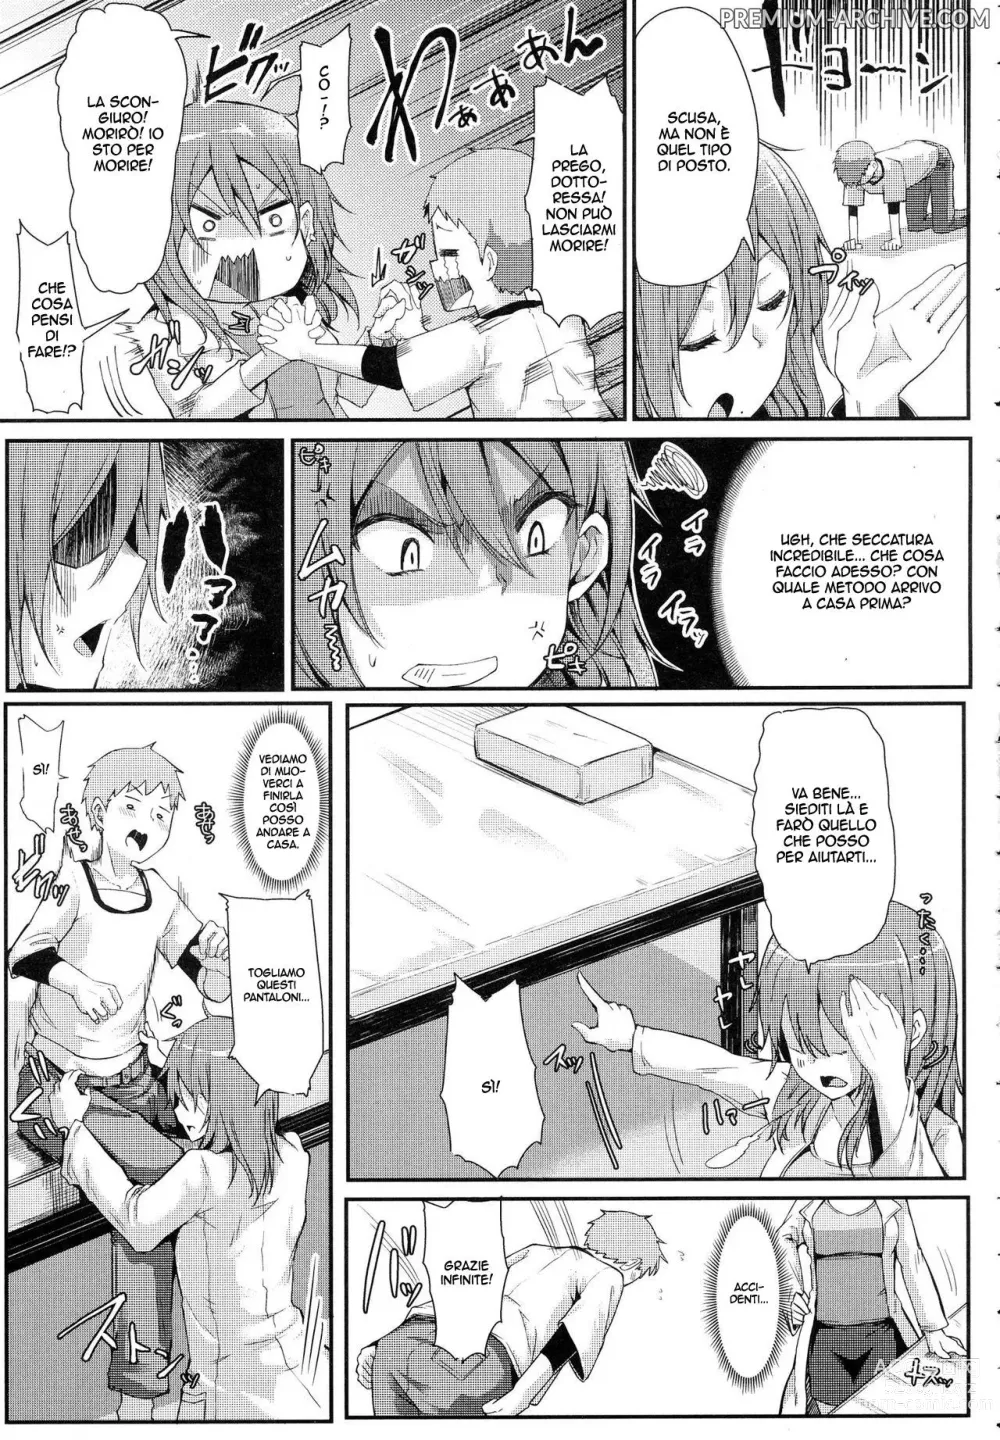 Page 5 of manga Goditela!